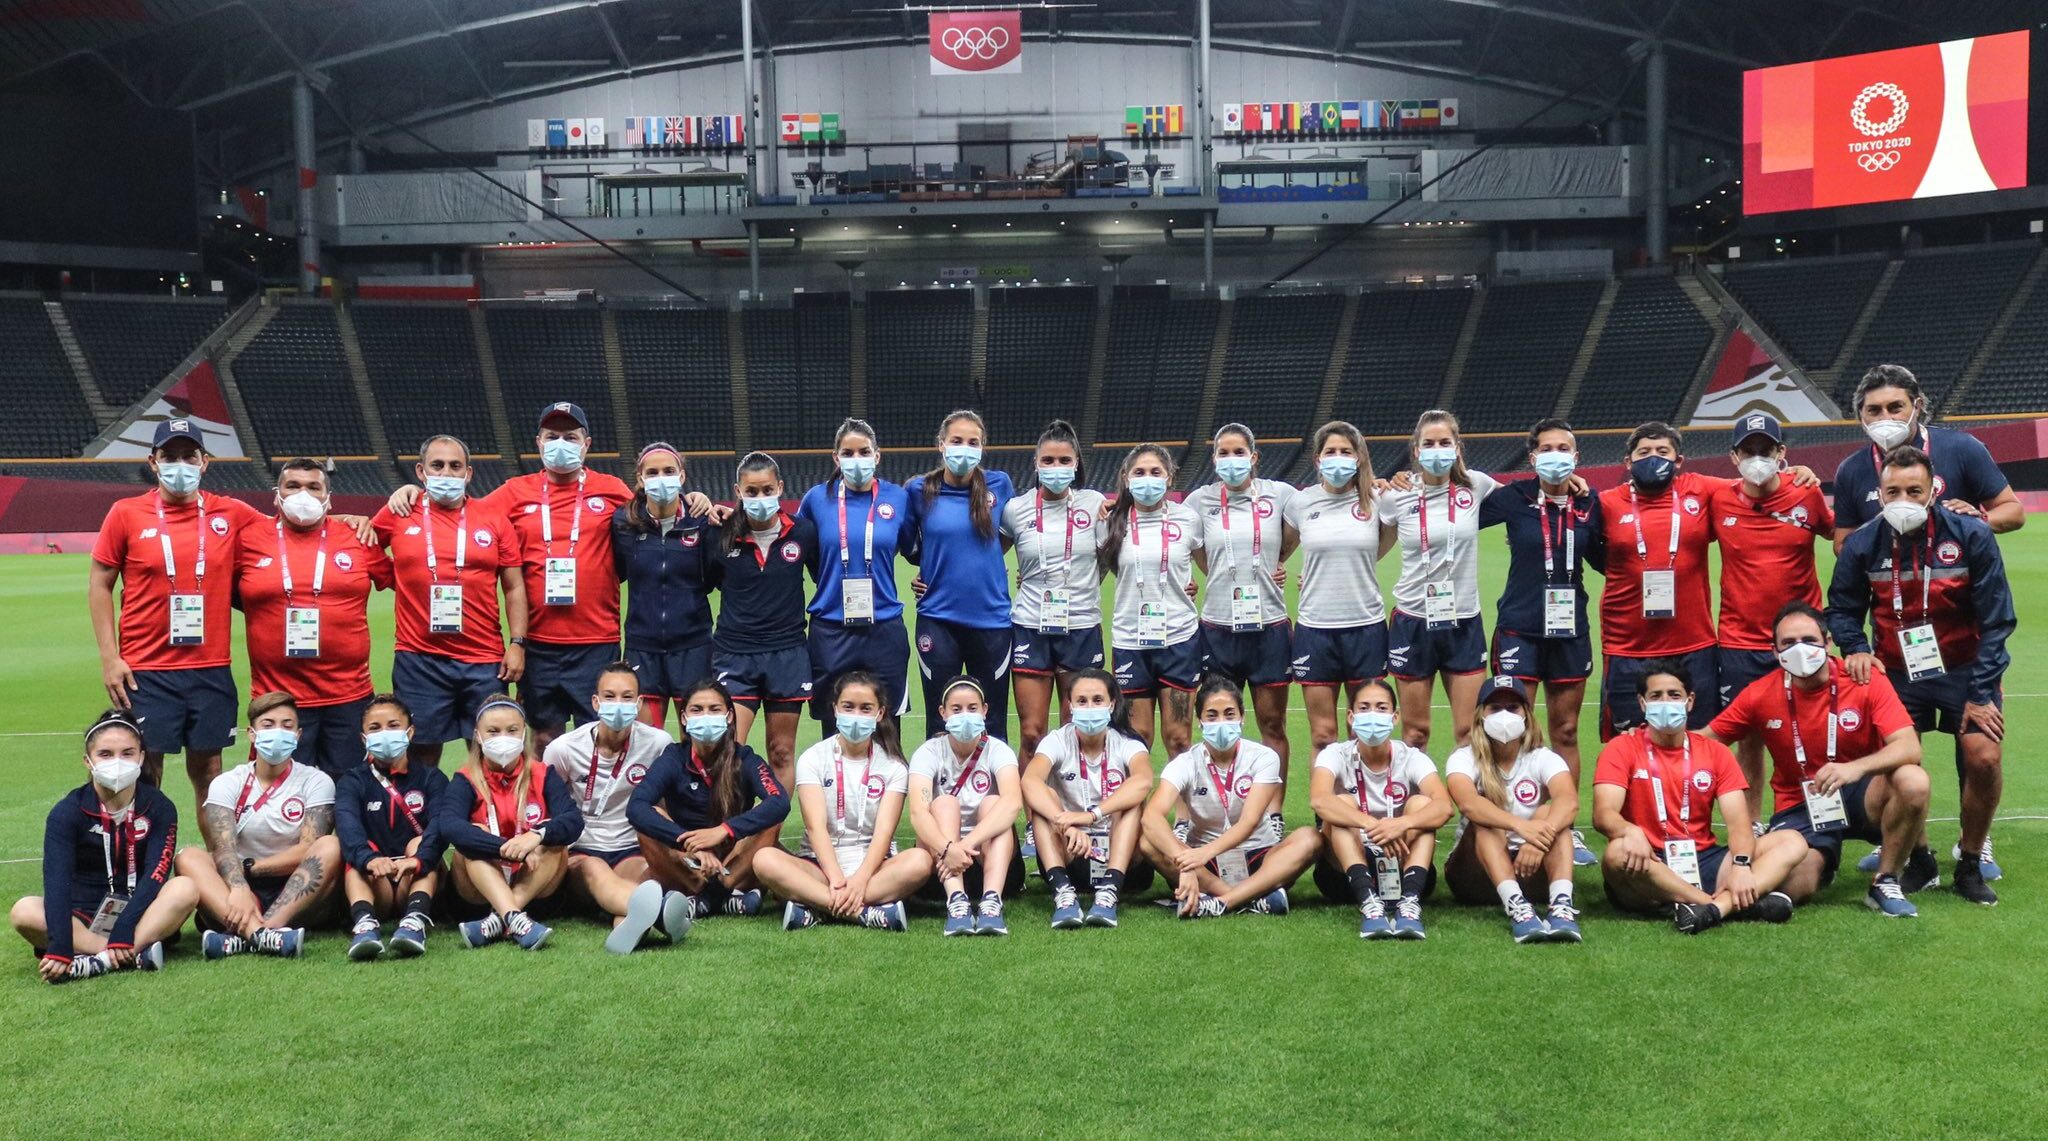 Delegación chilena de fútbol en el Sapporo Dome